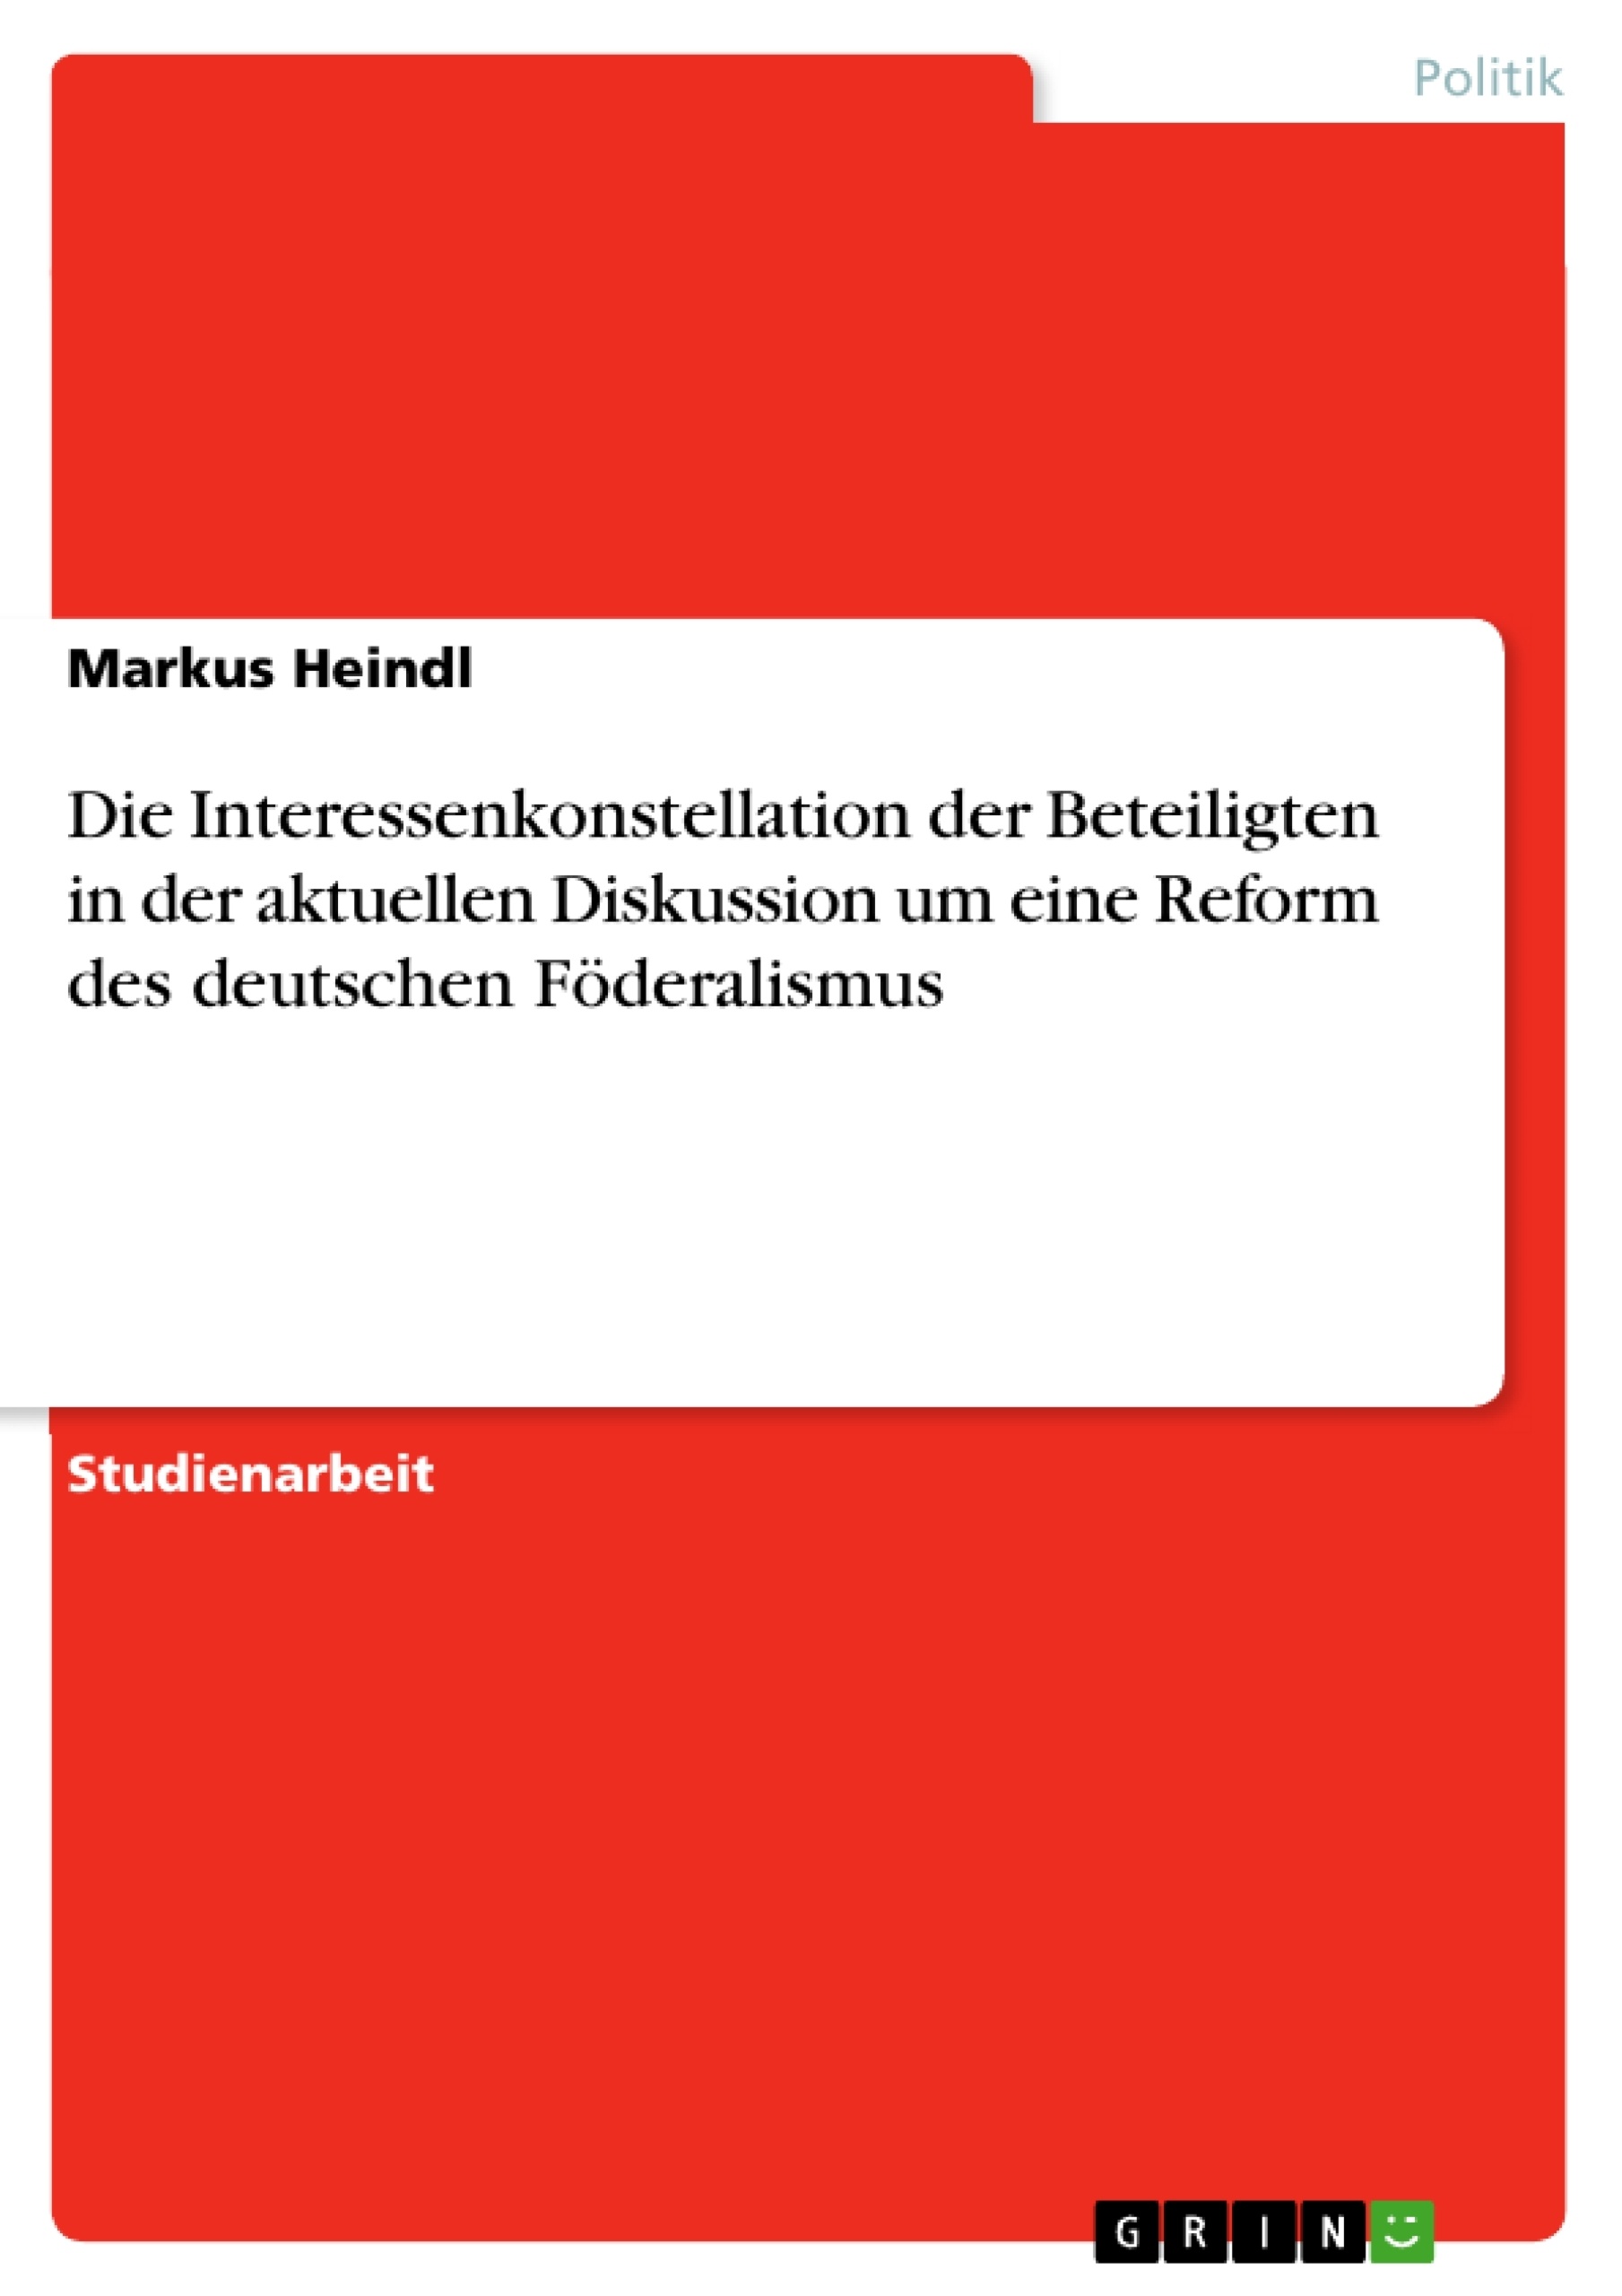 Título: Die Interessenkonstellation der Beteiligten in der aktuellen Diskussion um eine Reform des deutschen Föderalismus